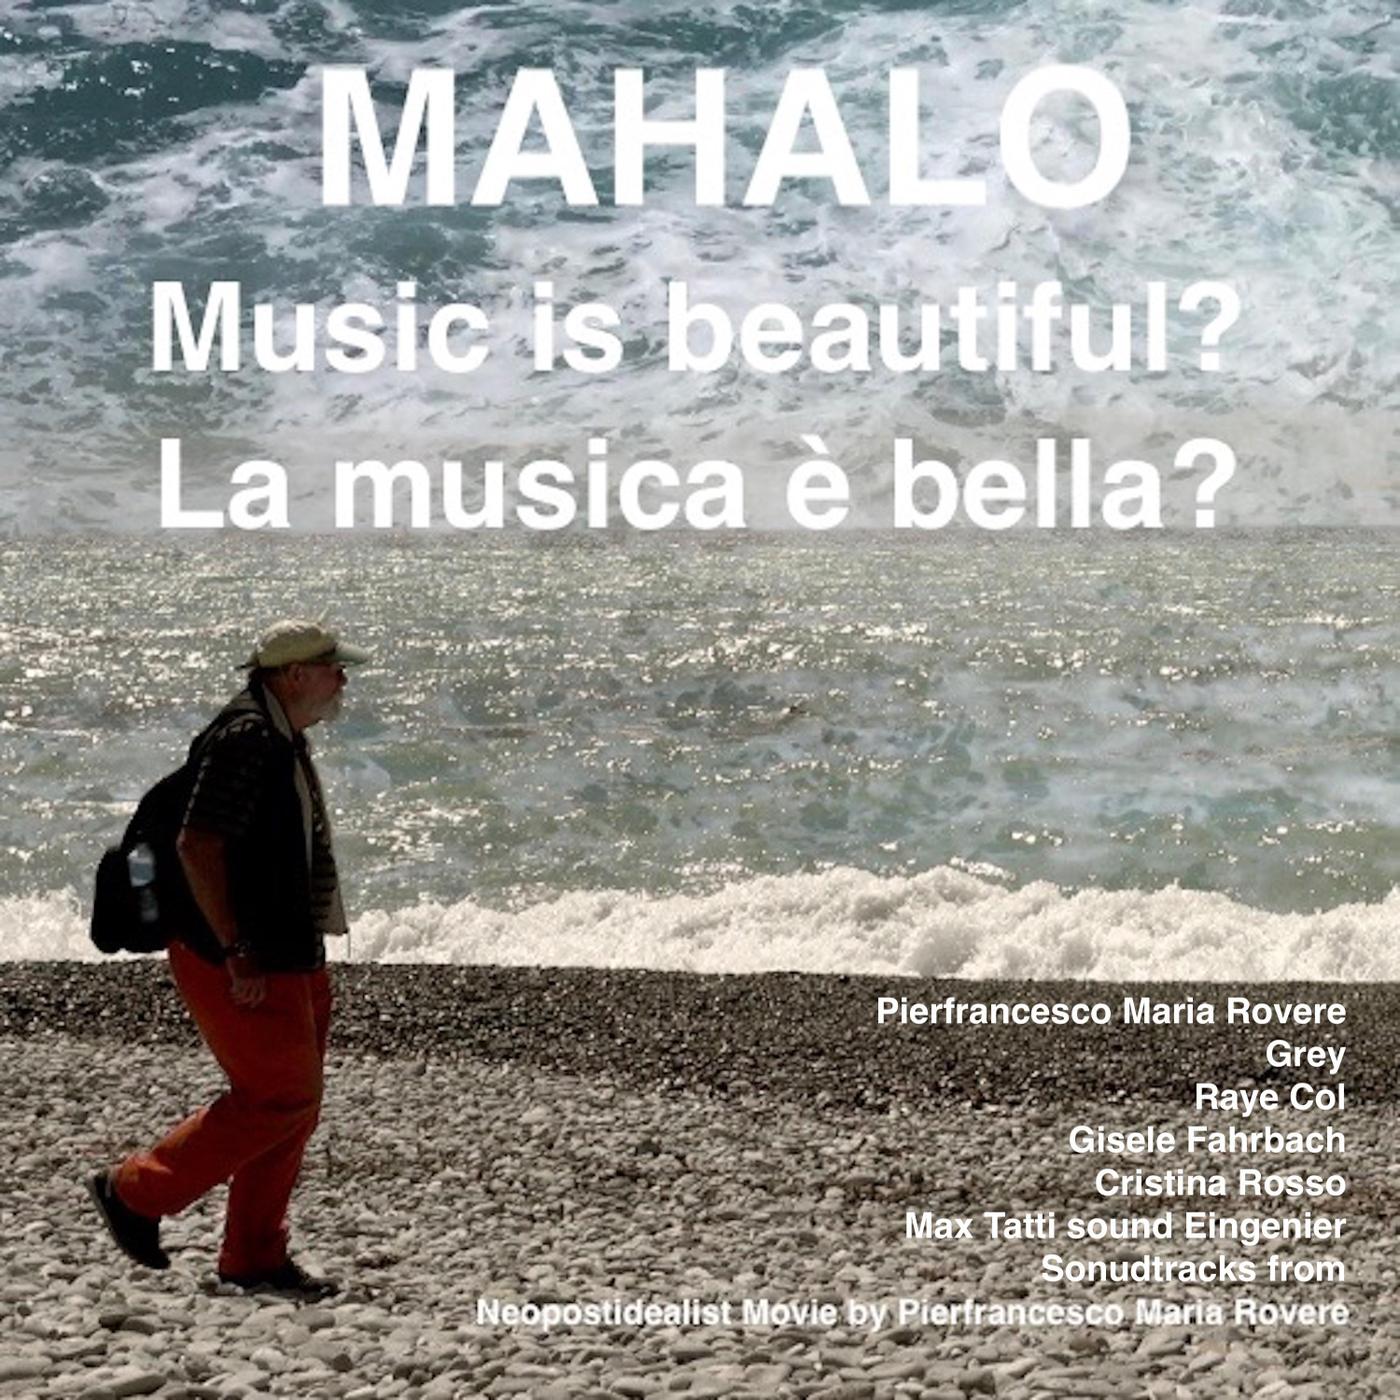 Mahalo Music Is Beautiful? La musica e bella? Original Soundtrack